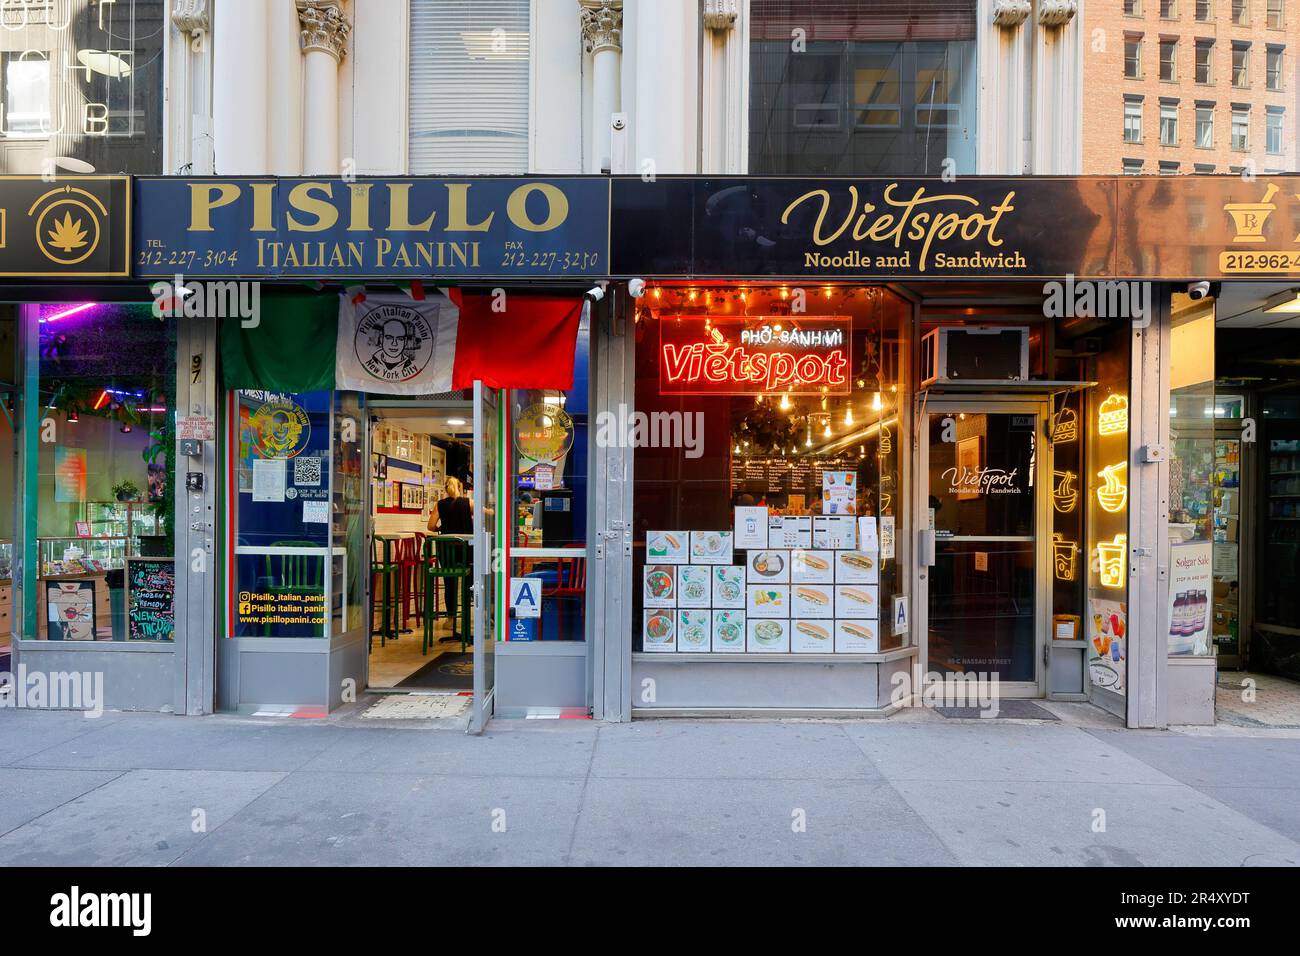 Vietspot, 99 Nassau St, New York, Pisillo, 97 Nassau St, NYC-Schaufensterfoto eines Vietnamesen und eines italienischen Panini-Shops in Lower Manhattan. Stockfoto